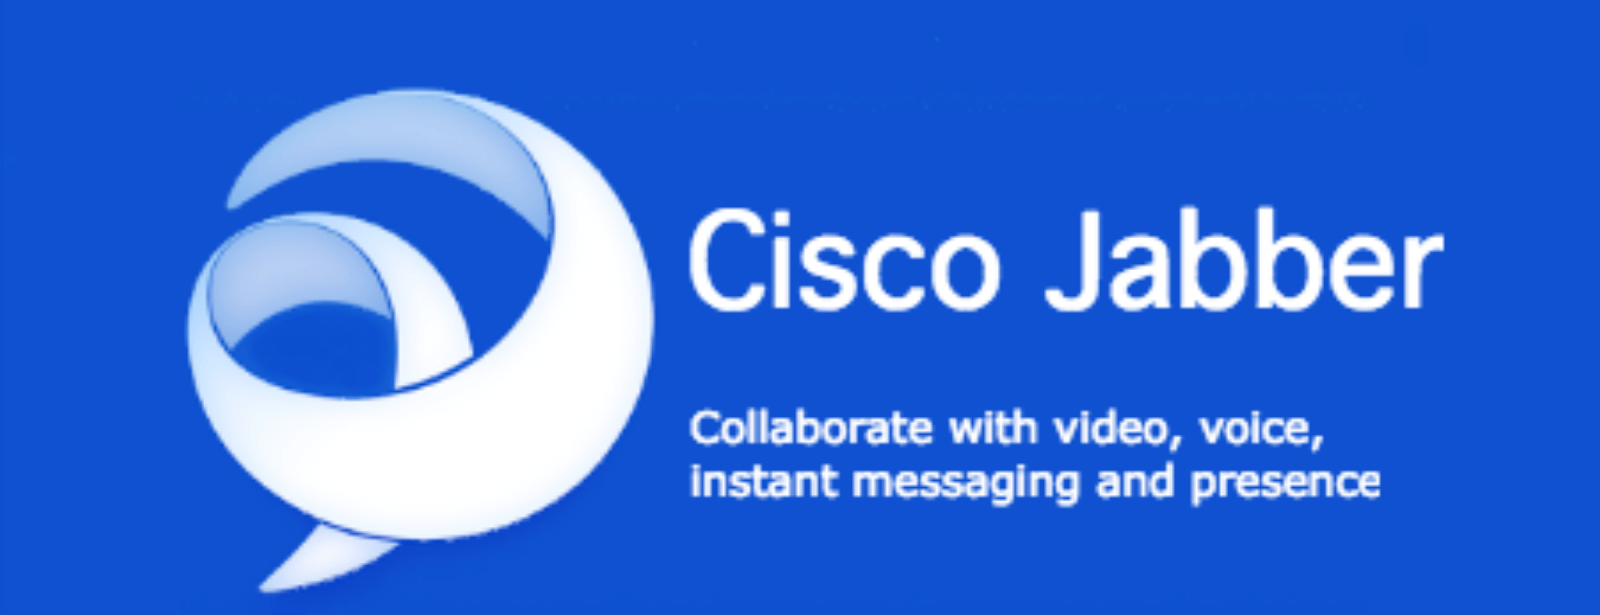 Cisco Jabber Logo - What's new in Cisco Jabber 12.5 - Unifi Communications